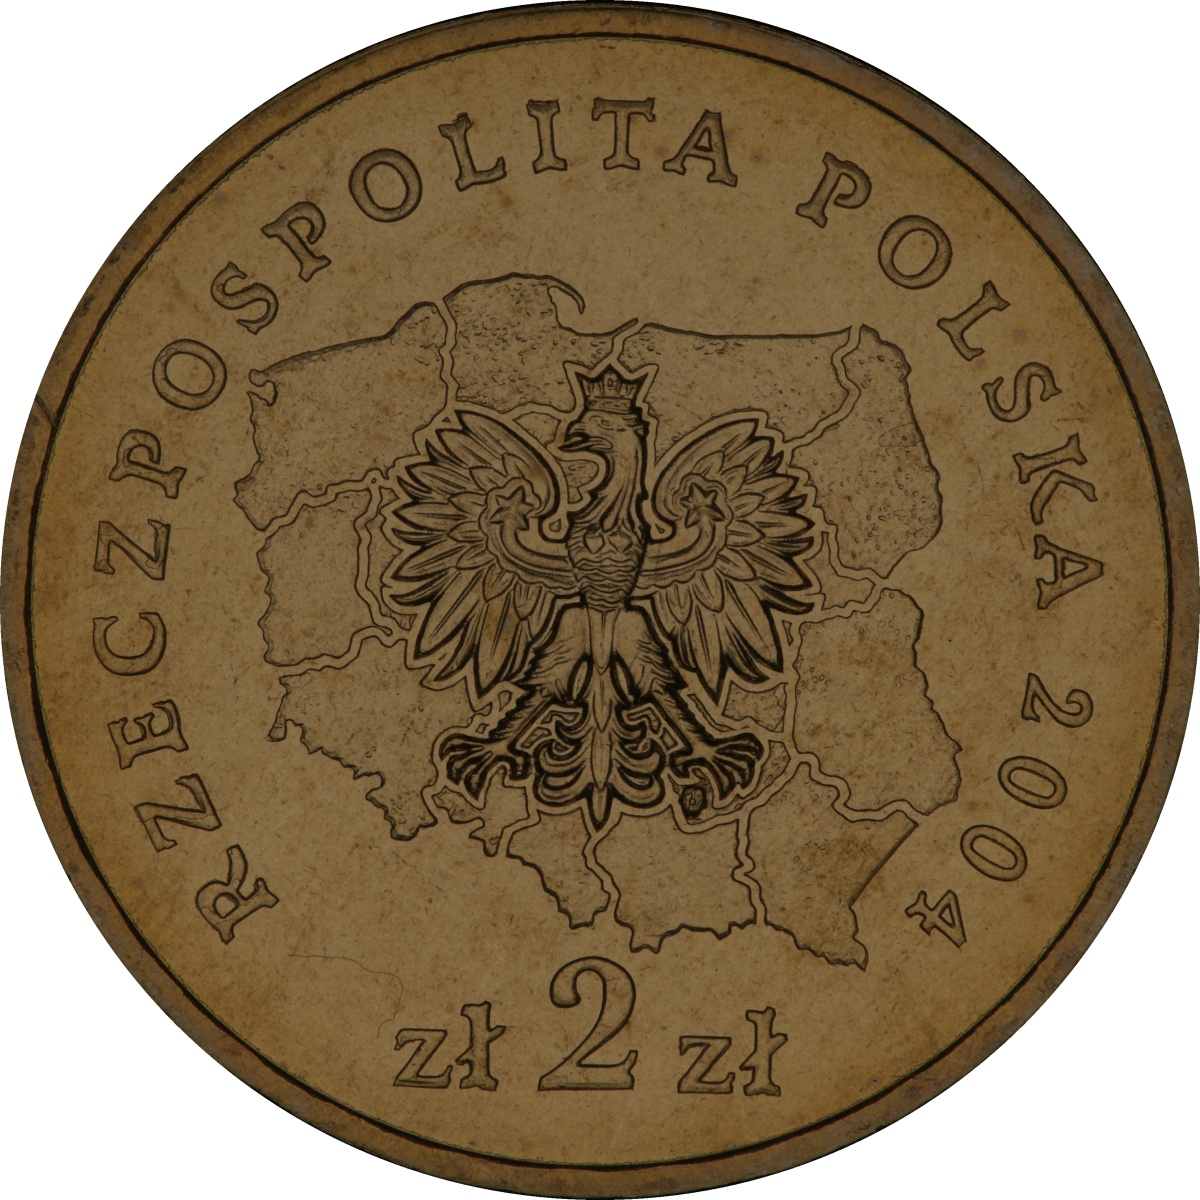 2zl-okolicznosciowe-wojewodztwo-podkarpackie-awers-monety